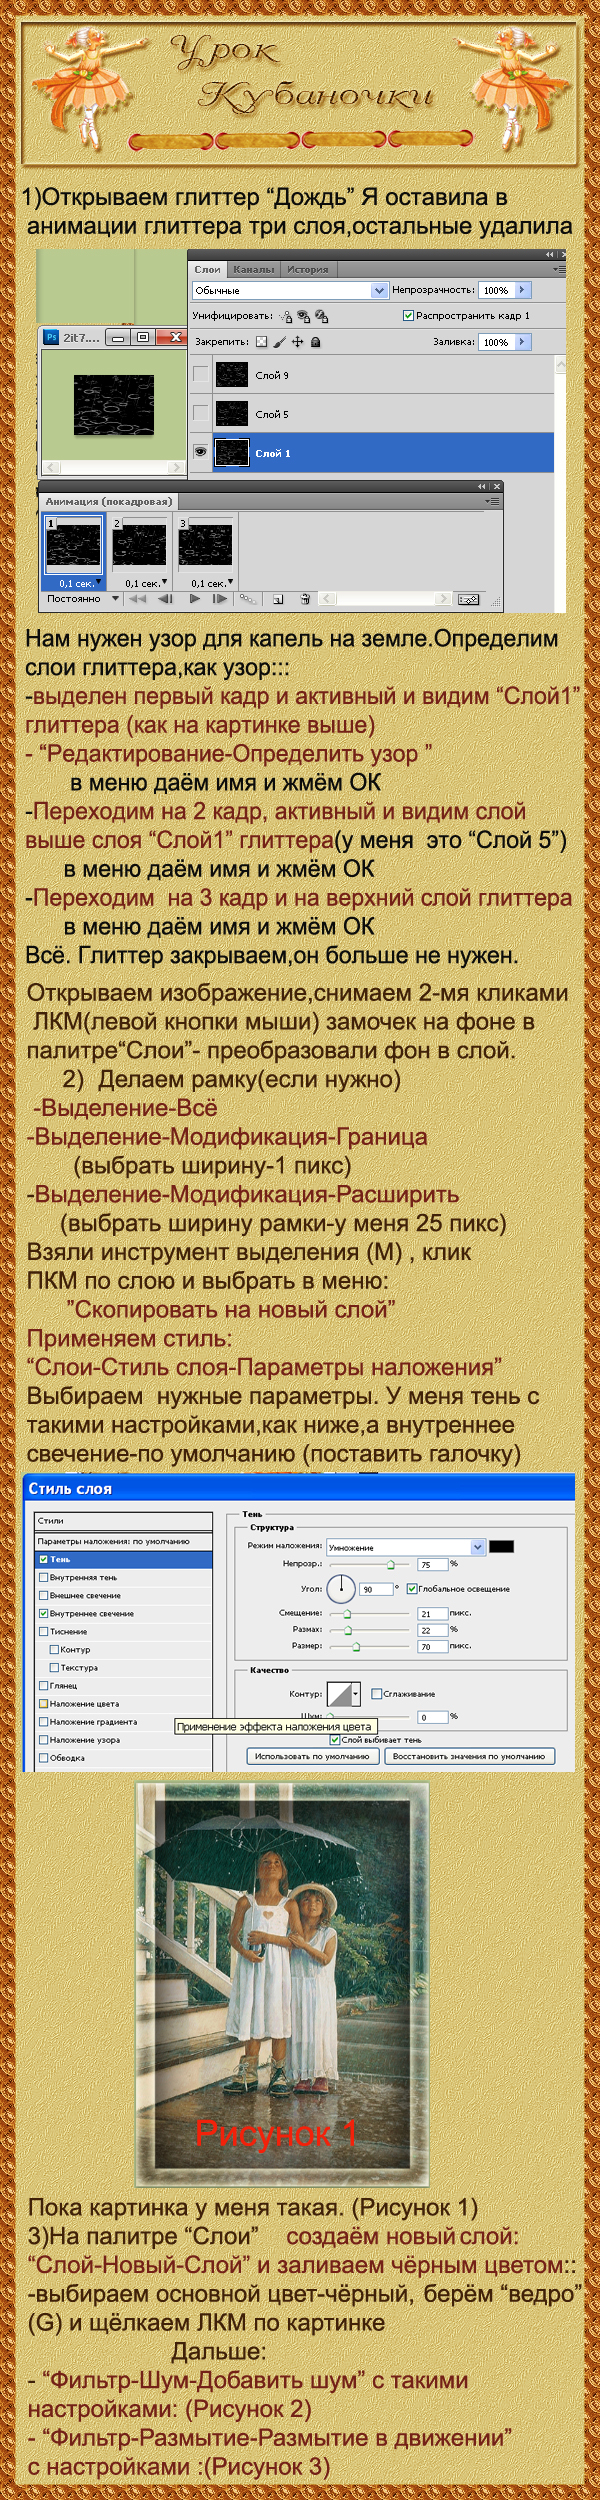 http://img-fotki.yandex.ru/get/4708/106108744.5b/0_71118_5c455940_orig.jpg